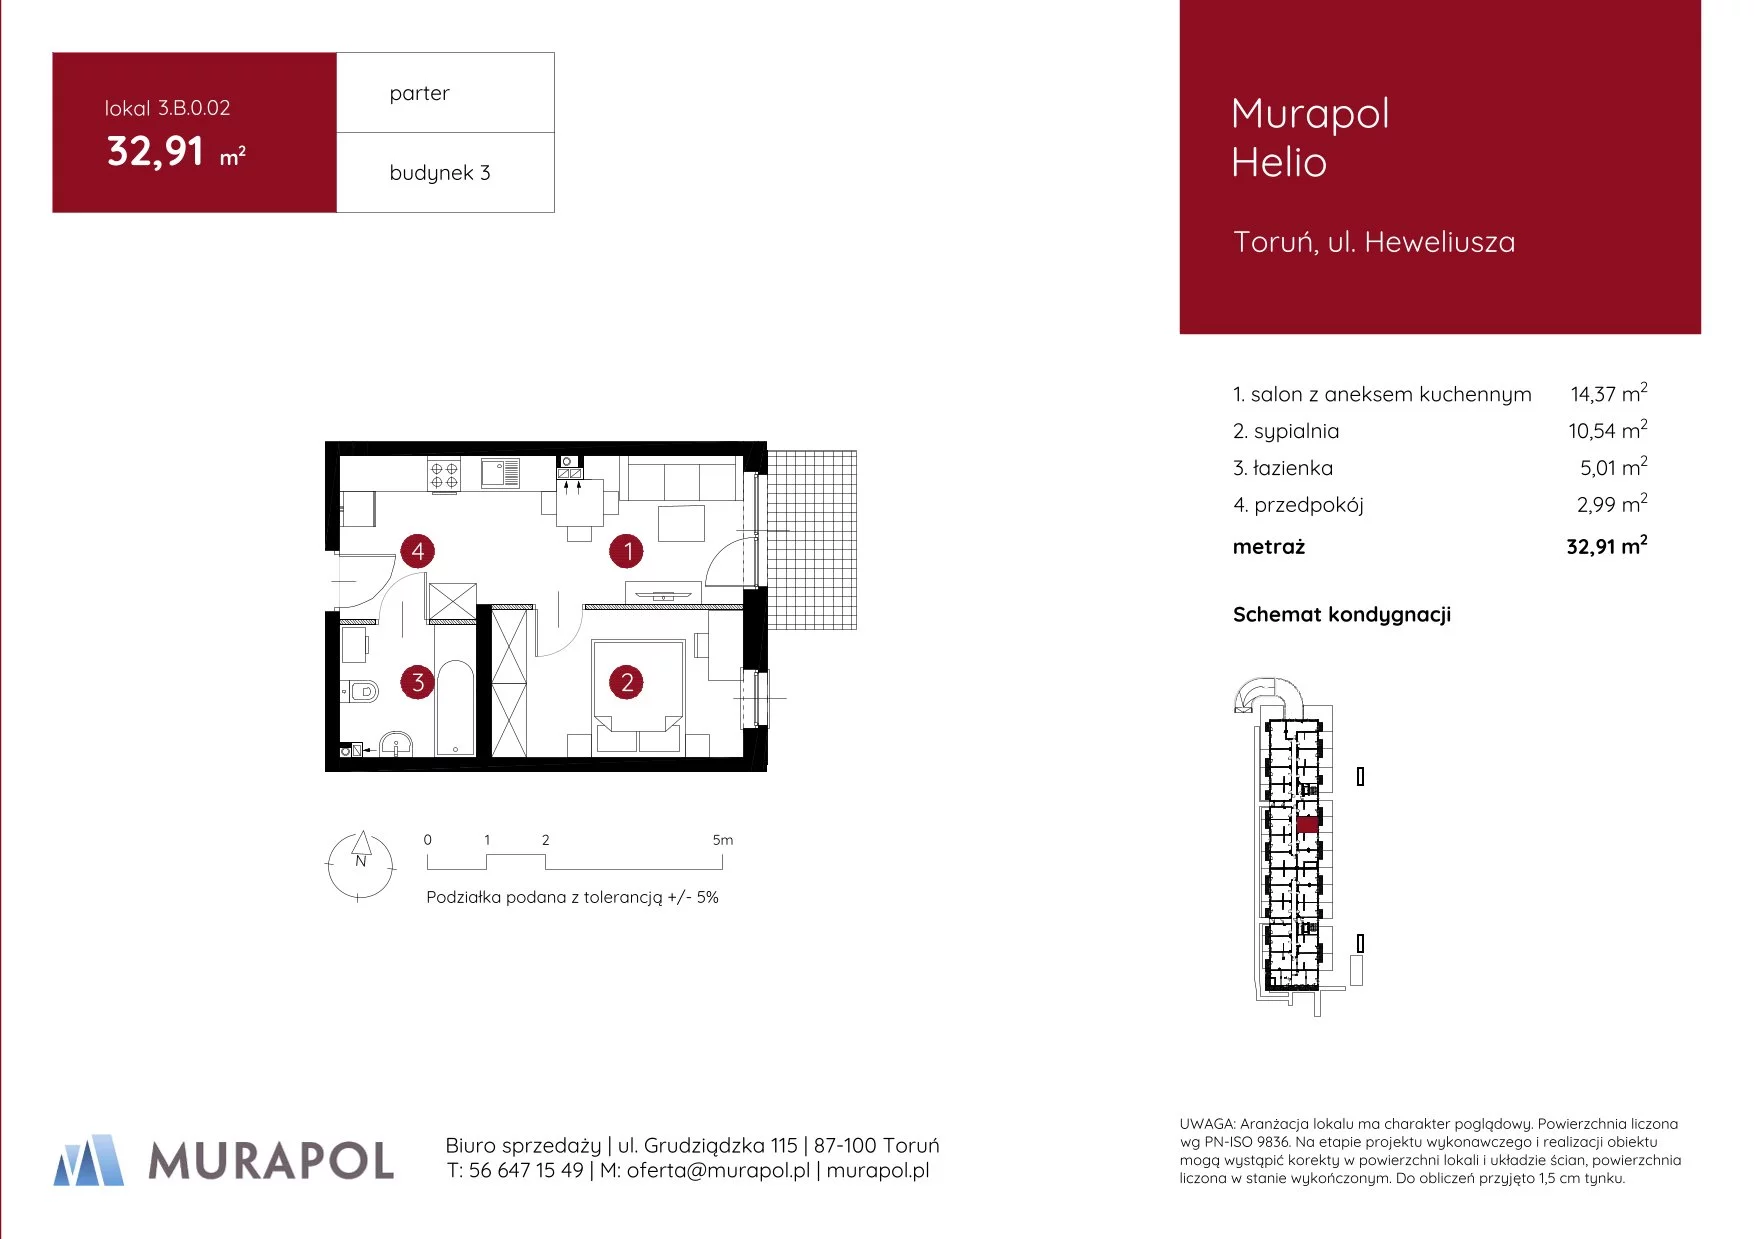 Mieszkanie 32,91 m², parter, oferta nr 3.B.0.02, Murapol Helio, Toruń, Wrzosy, JAR, ul. Heweliusza